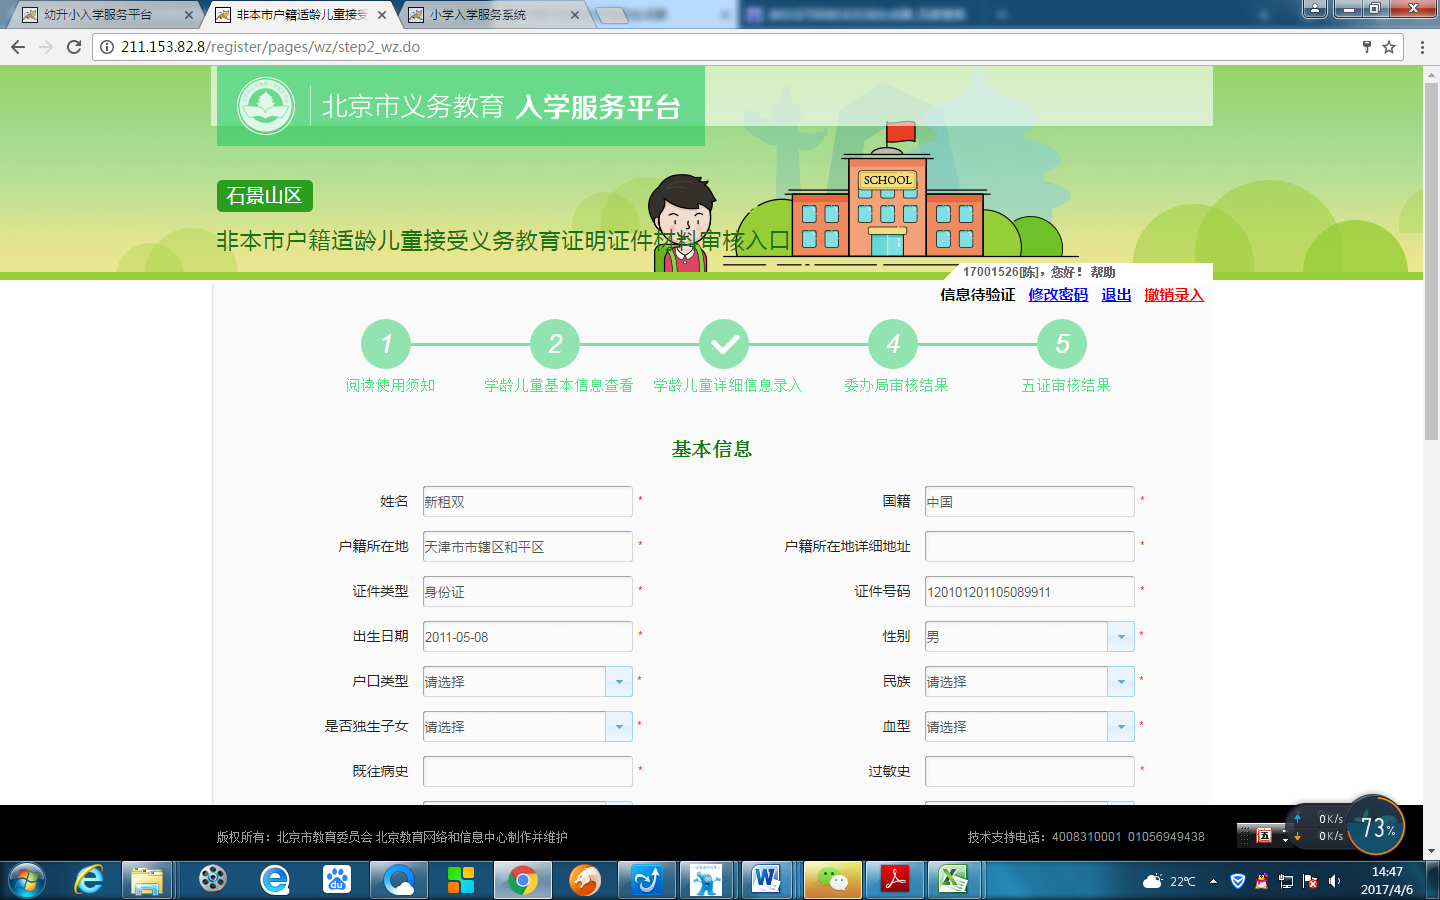 非北京市户籍适龄儿童入学信息采集流程图4